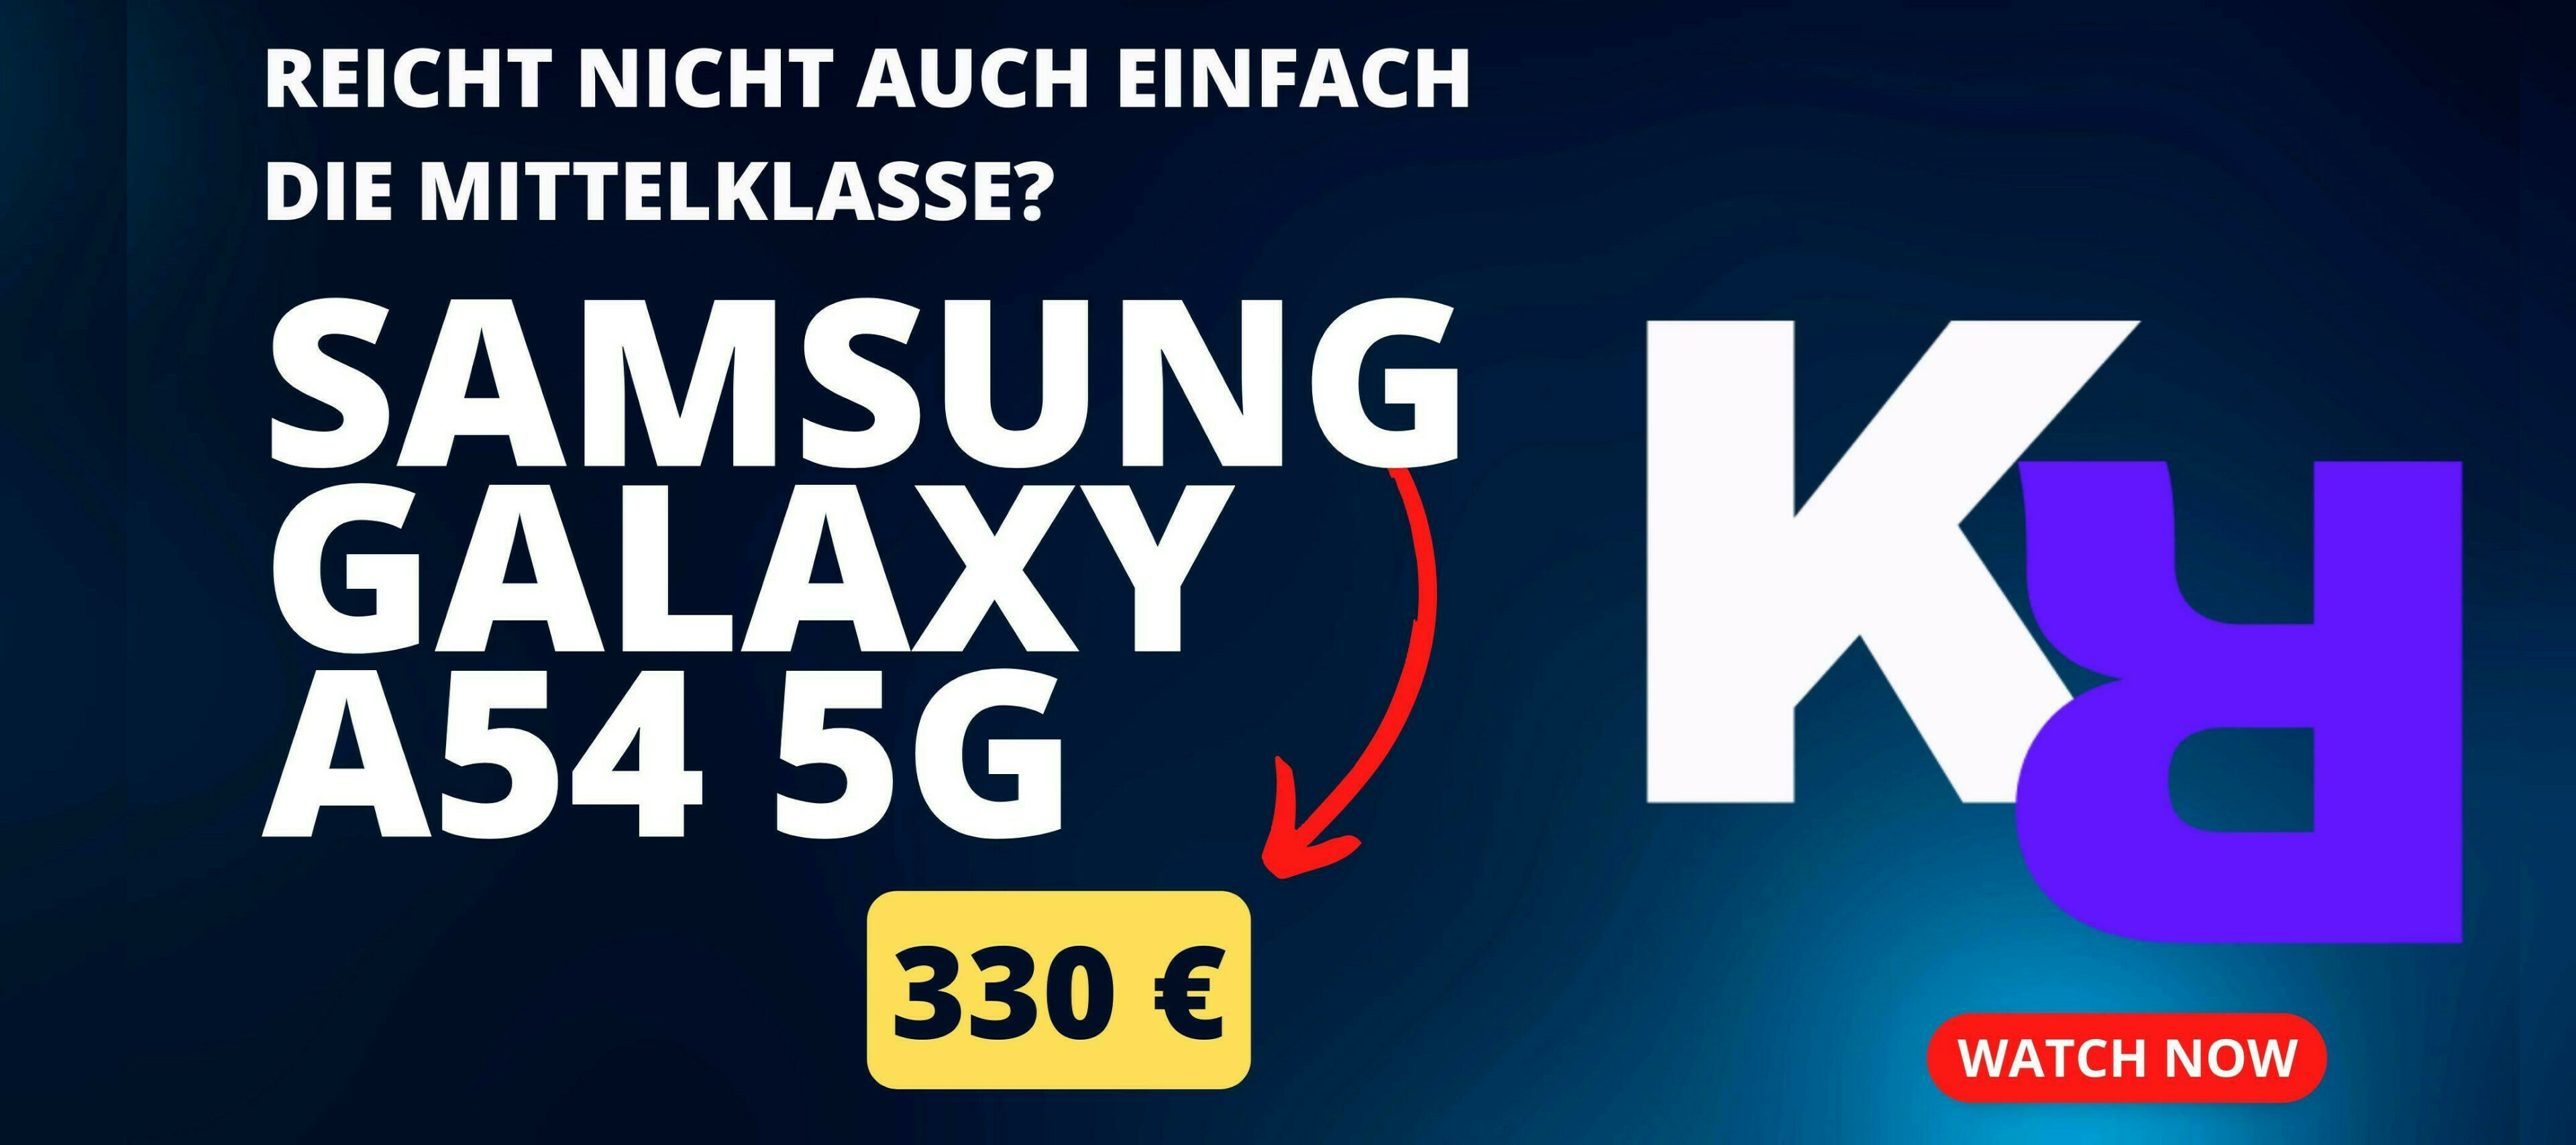 Samsung Galaxy A54 5G und Galaxy Watch 4 im Test! Reicht nicht einfach die Mittelklasse?